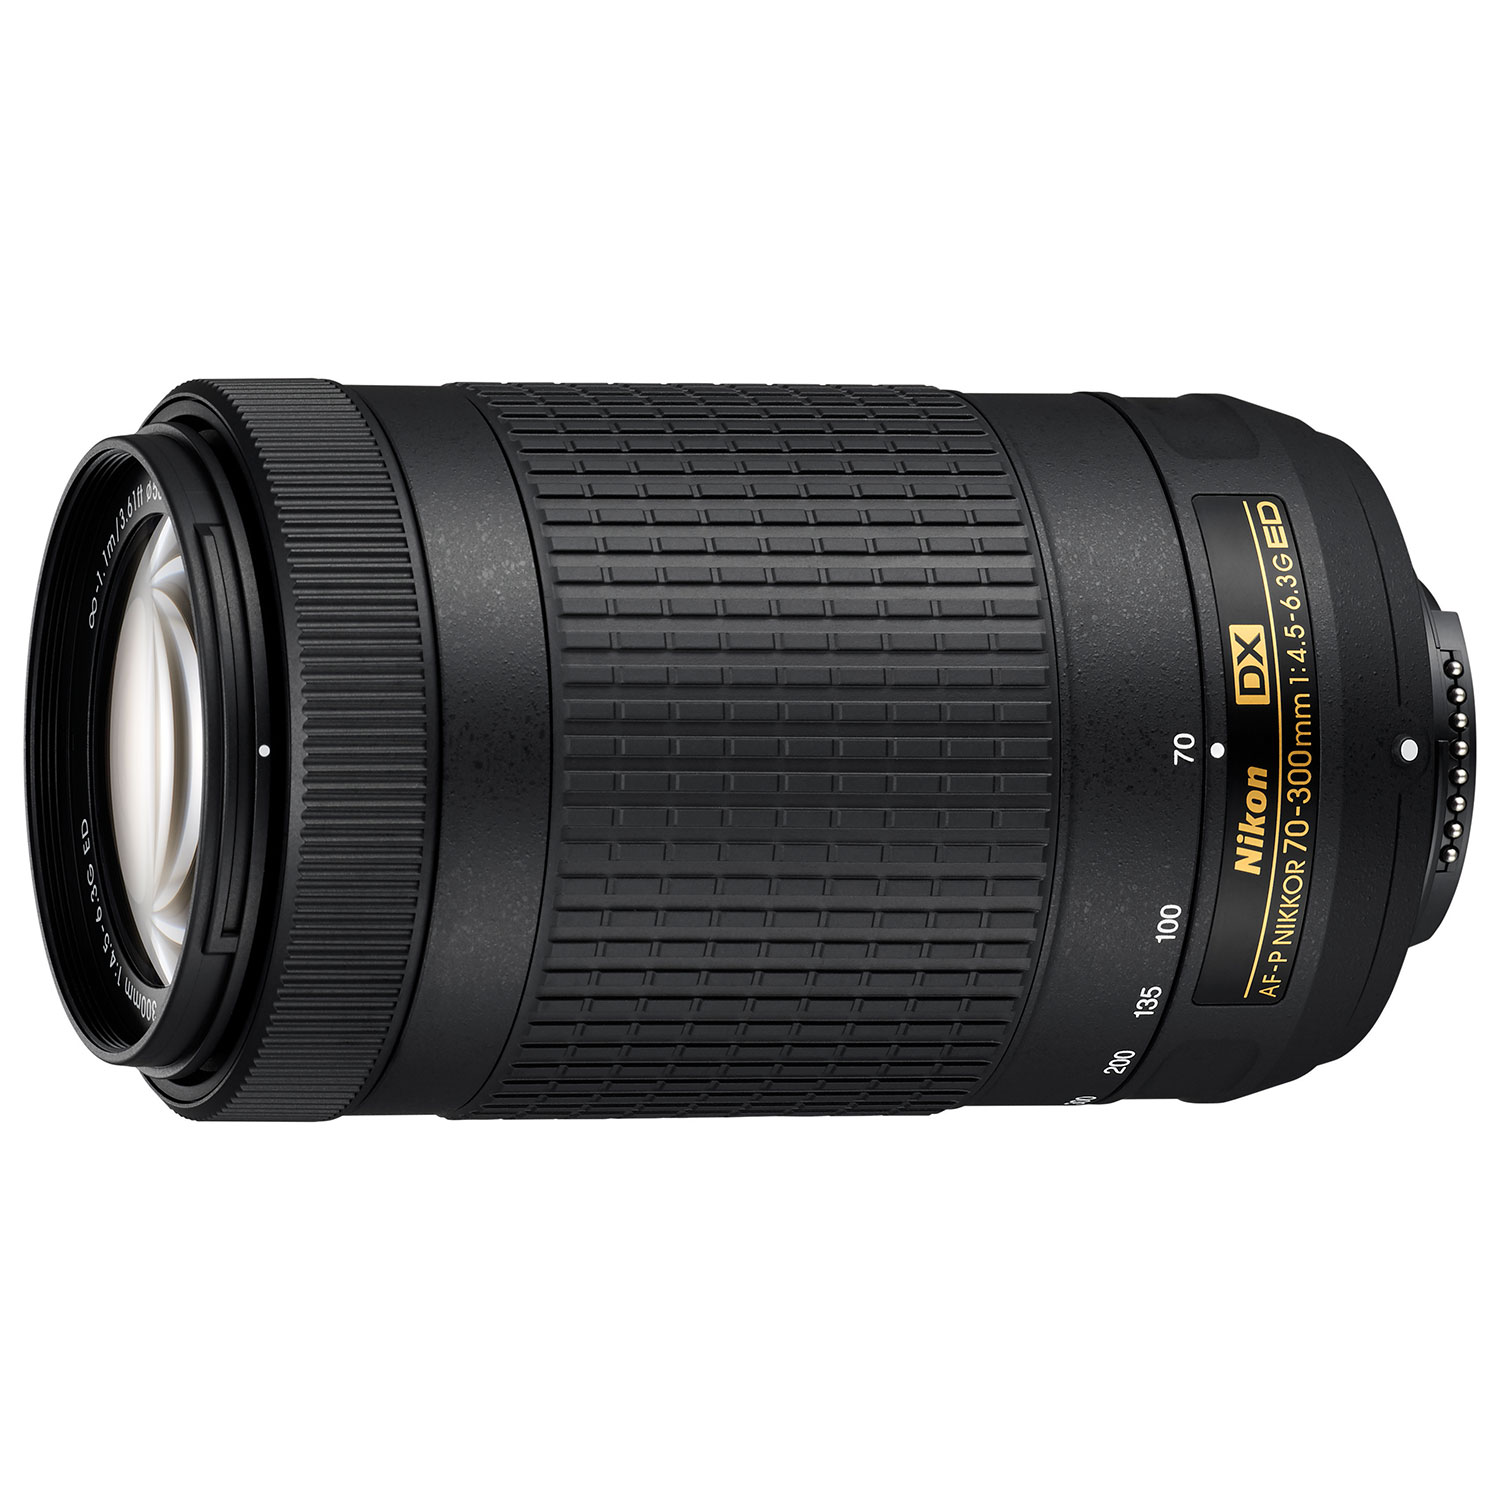 Nikon NIKKOR 70-300mm f/4.5-6.3G ED AF-P DX Lens